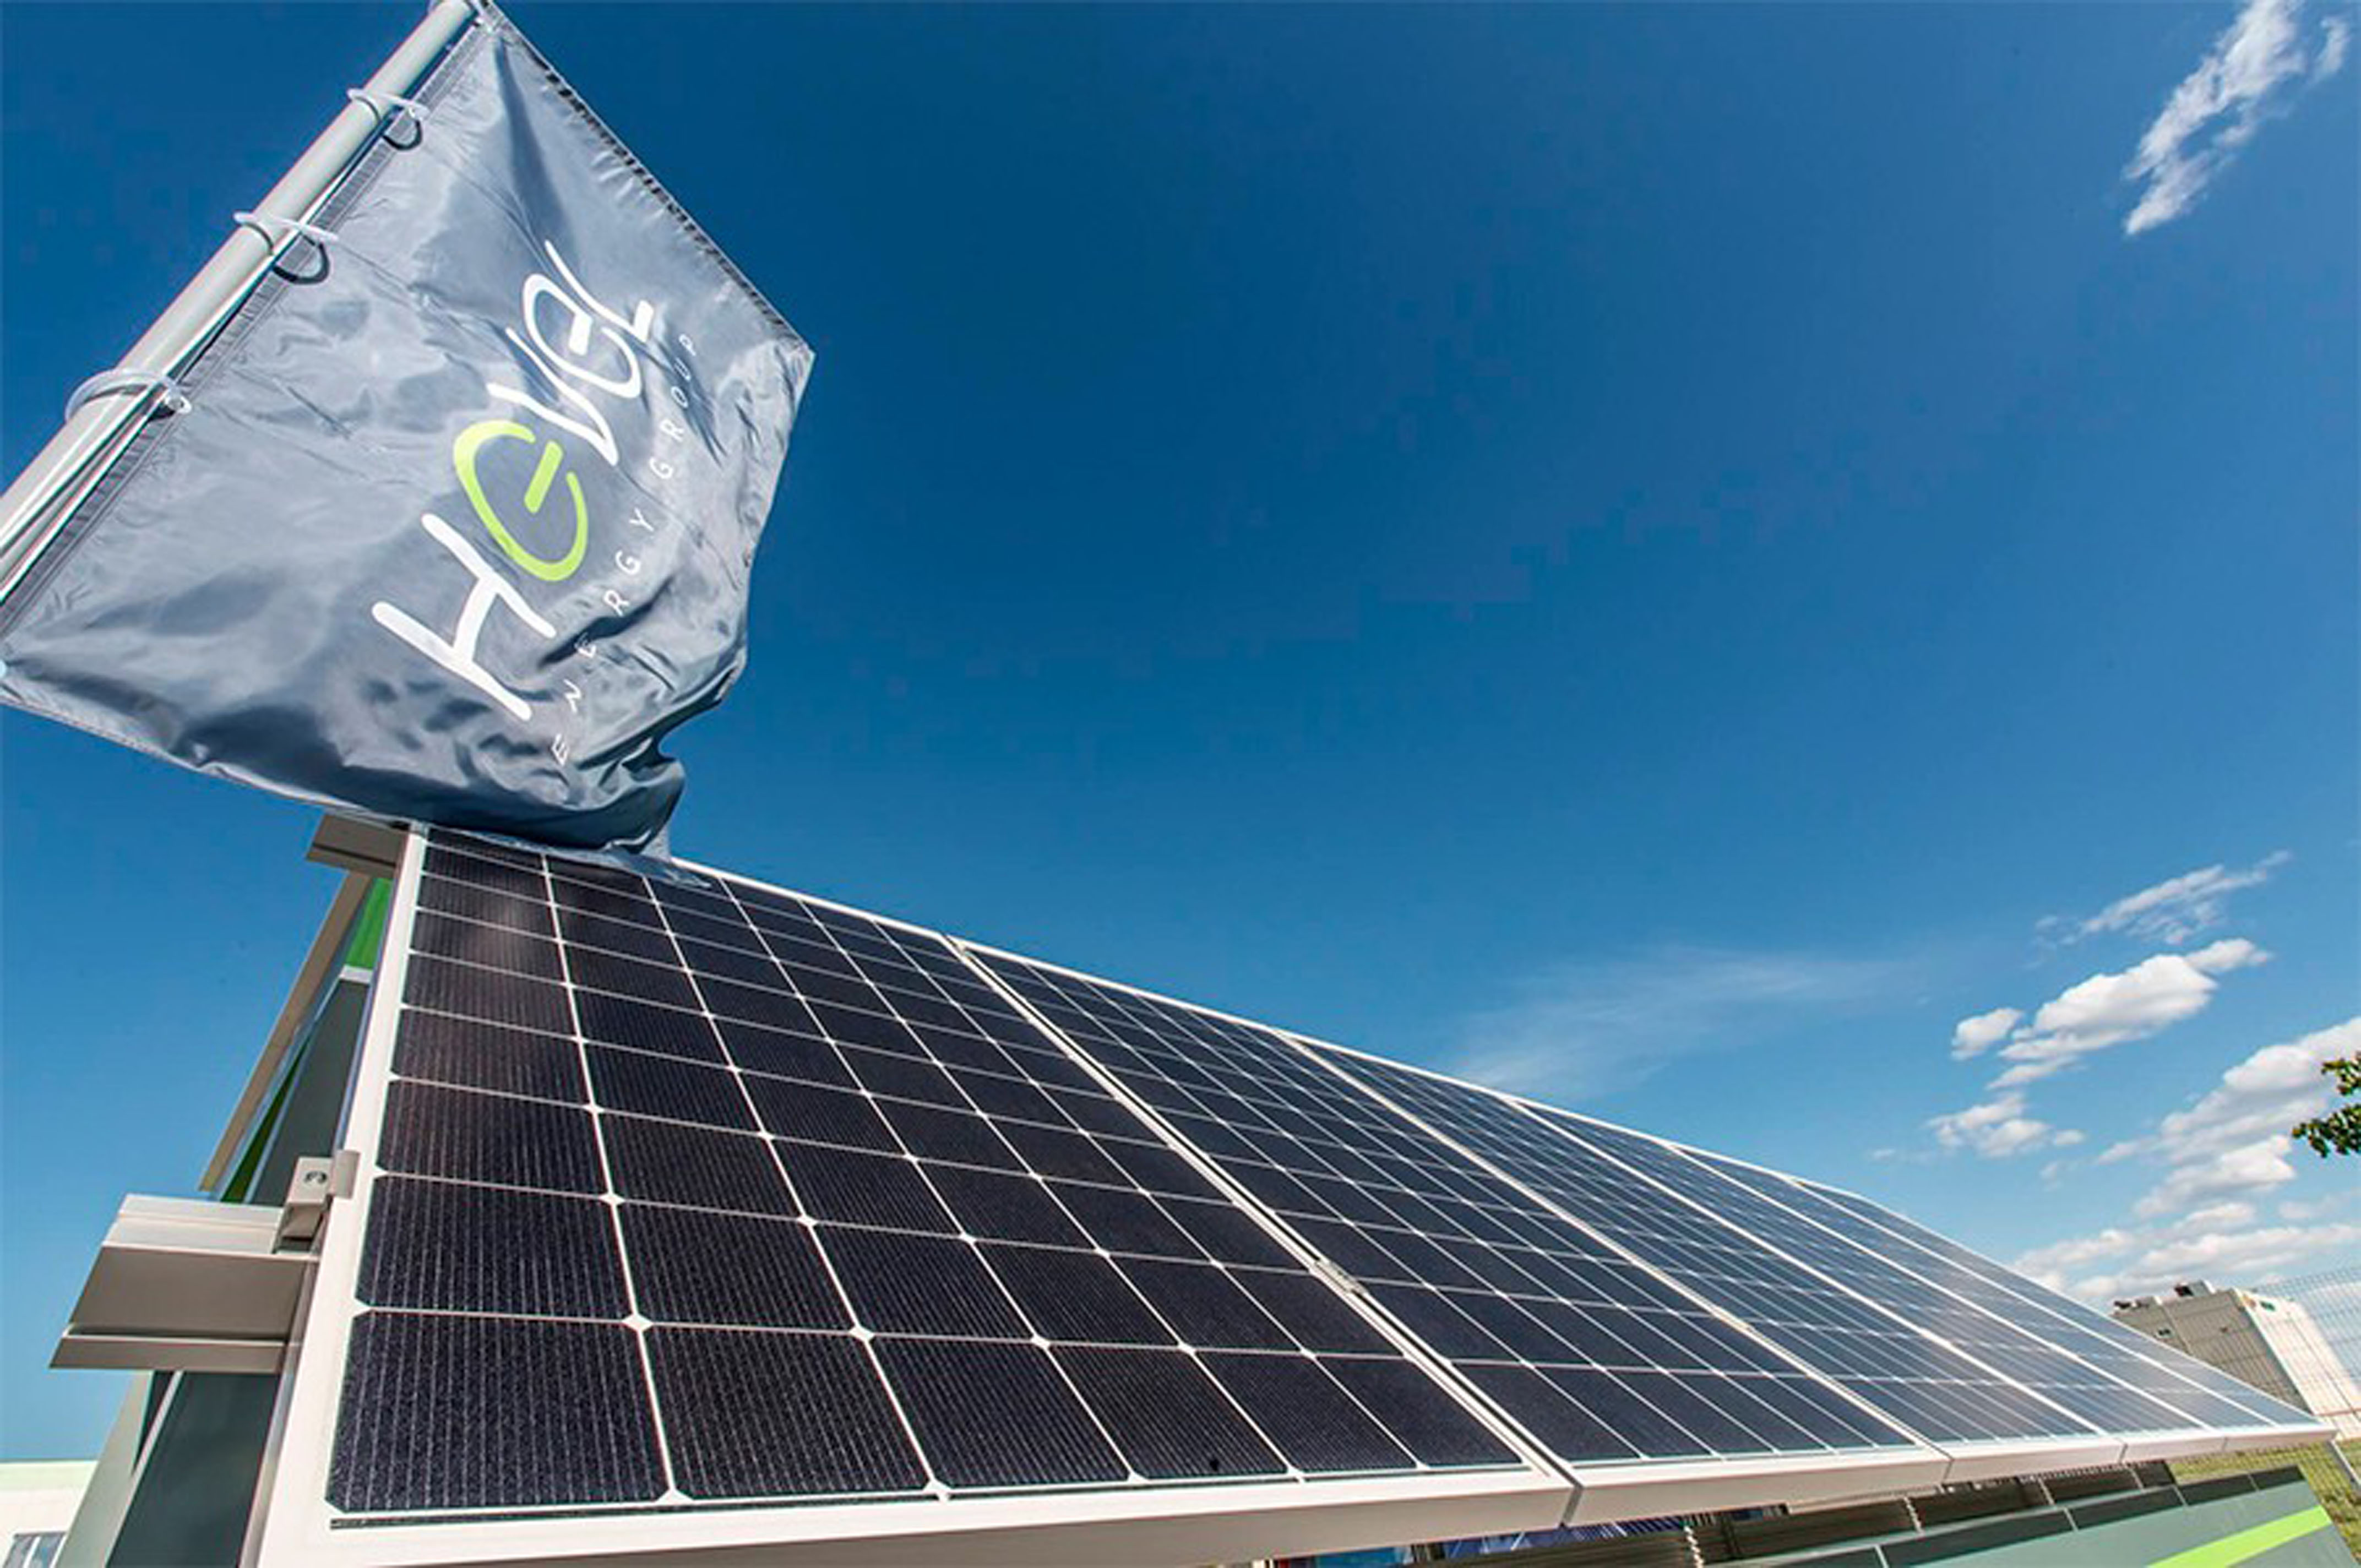 ГК «КОРТРОС» использует на своих проектах альтернативные источники энергии  - фото 1